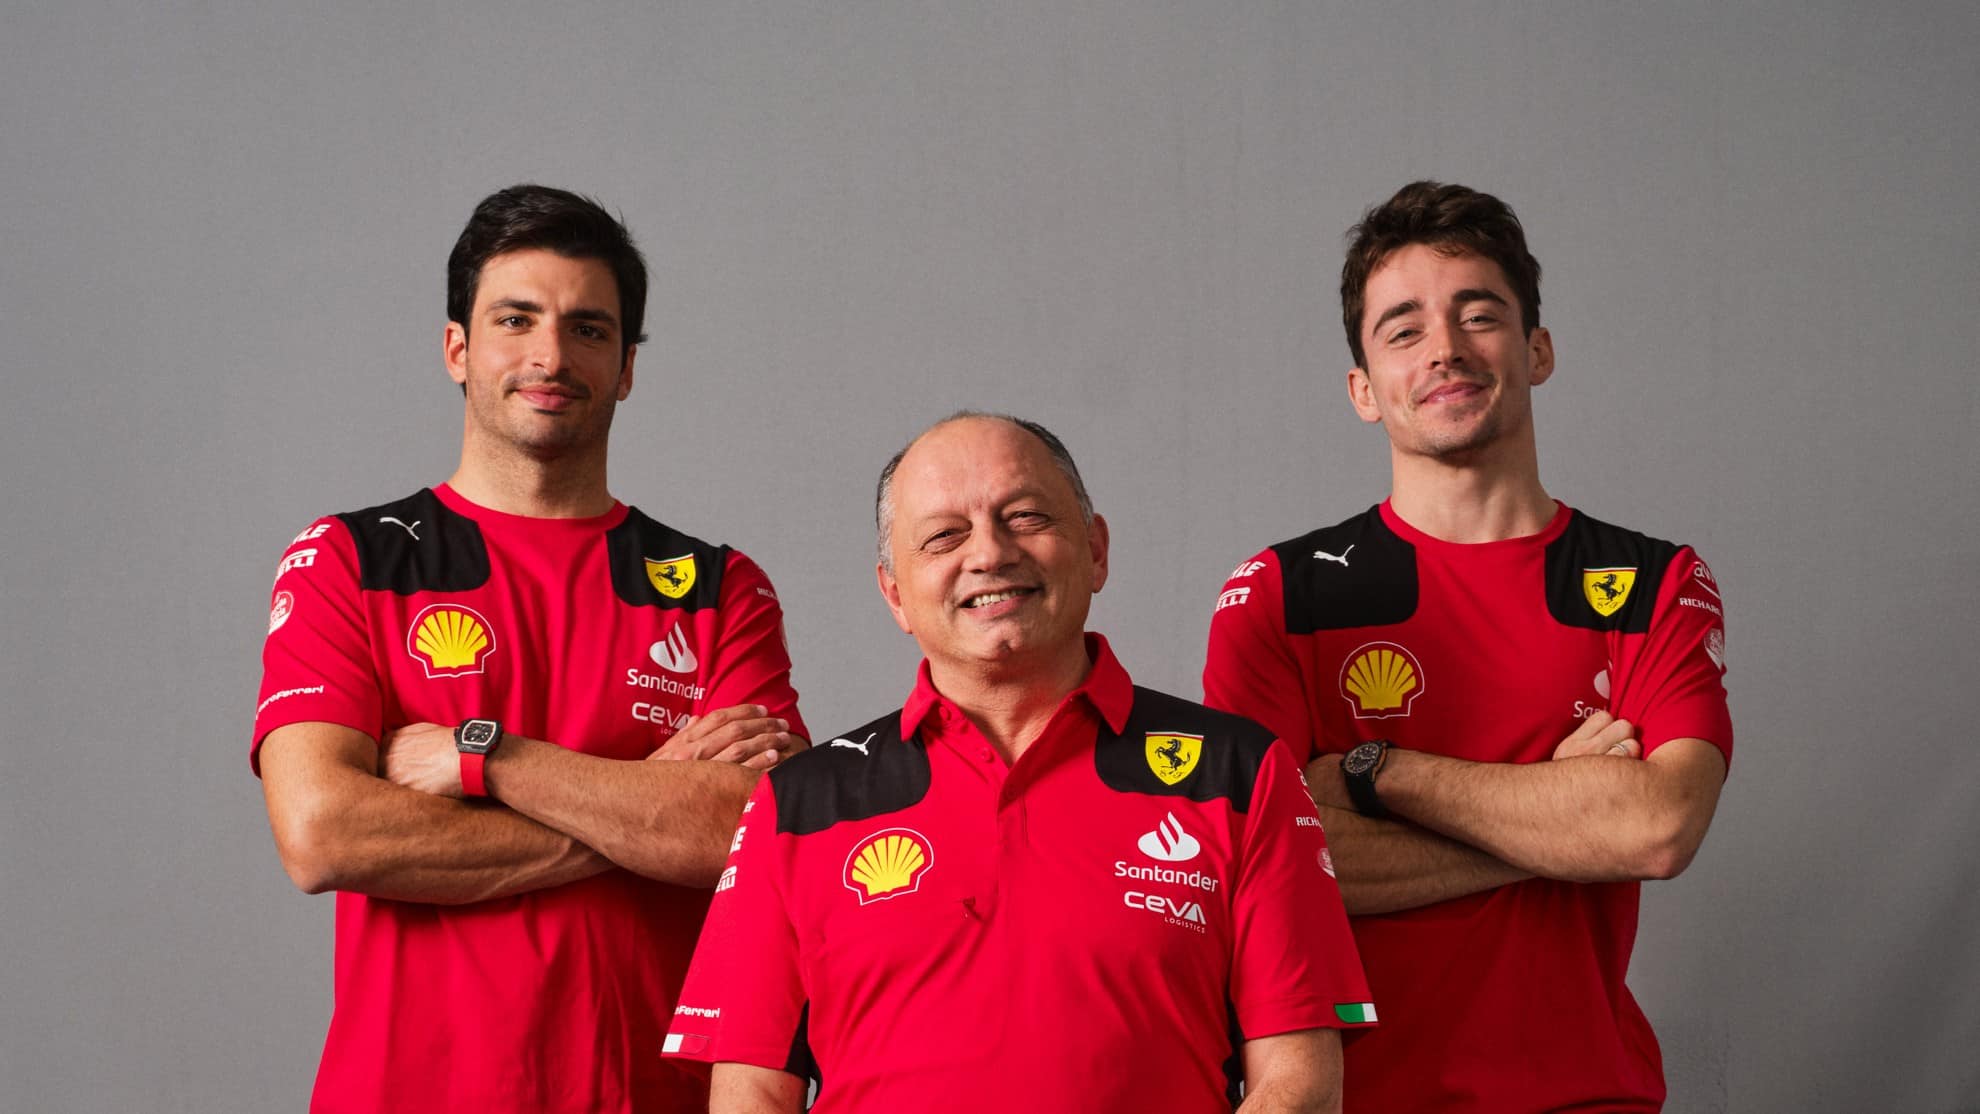 Vasseur: “Non mi importa chi vince, basta che sia una Ferrari”